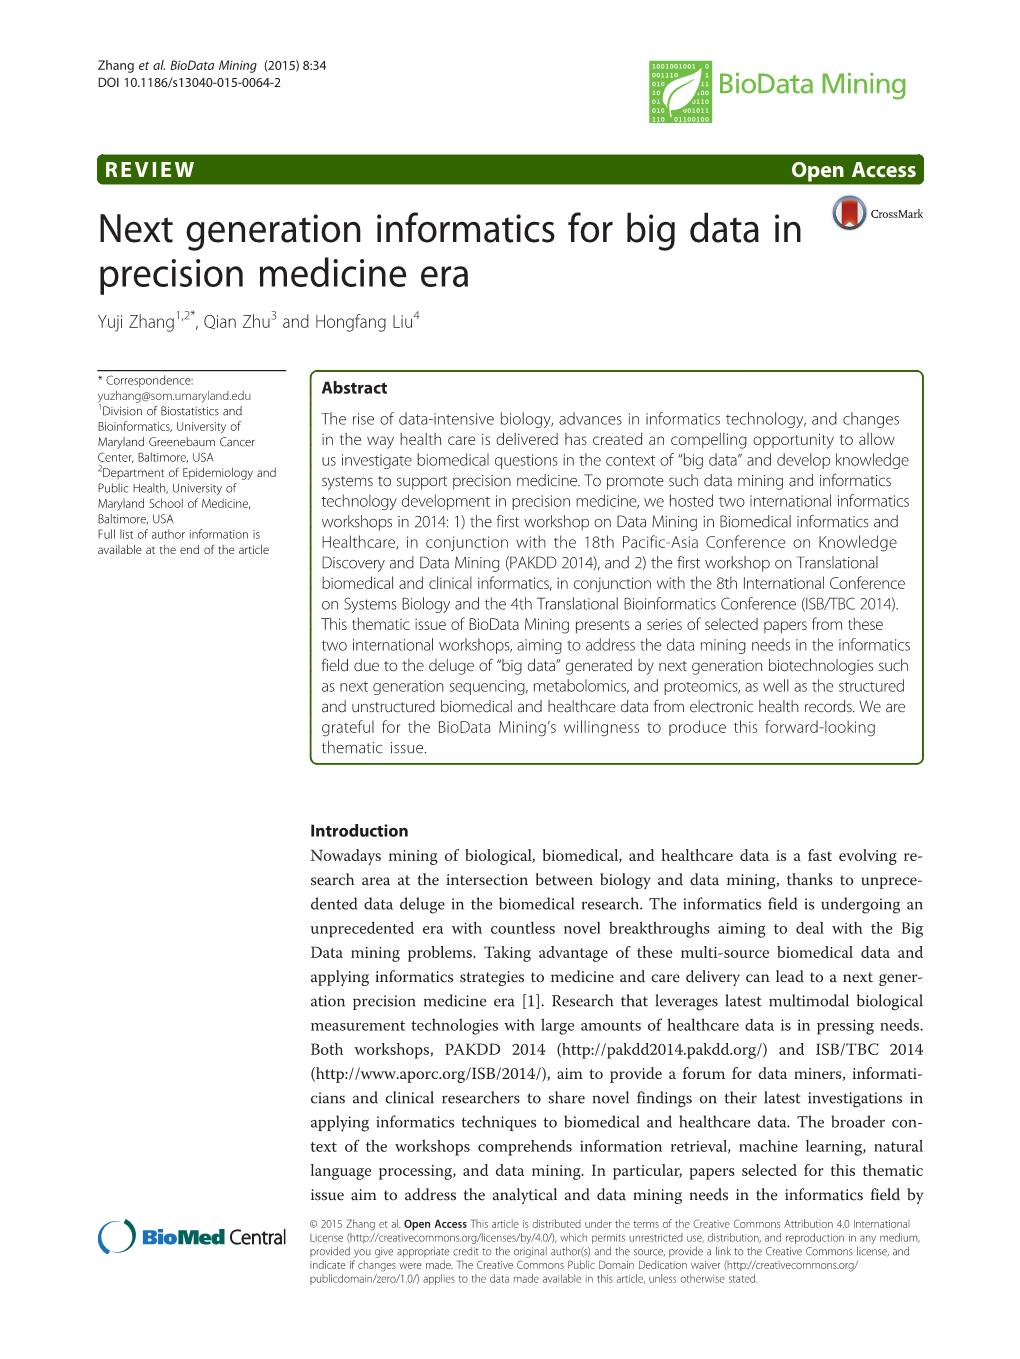 Next Generation Informatics for Big Data in Precision Medicine Era Yuji Zhang1,2*, Qian Zhu3 and Hongfang Liu4